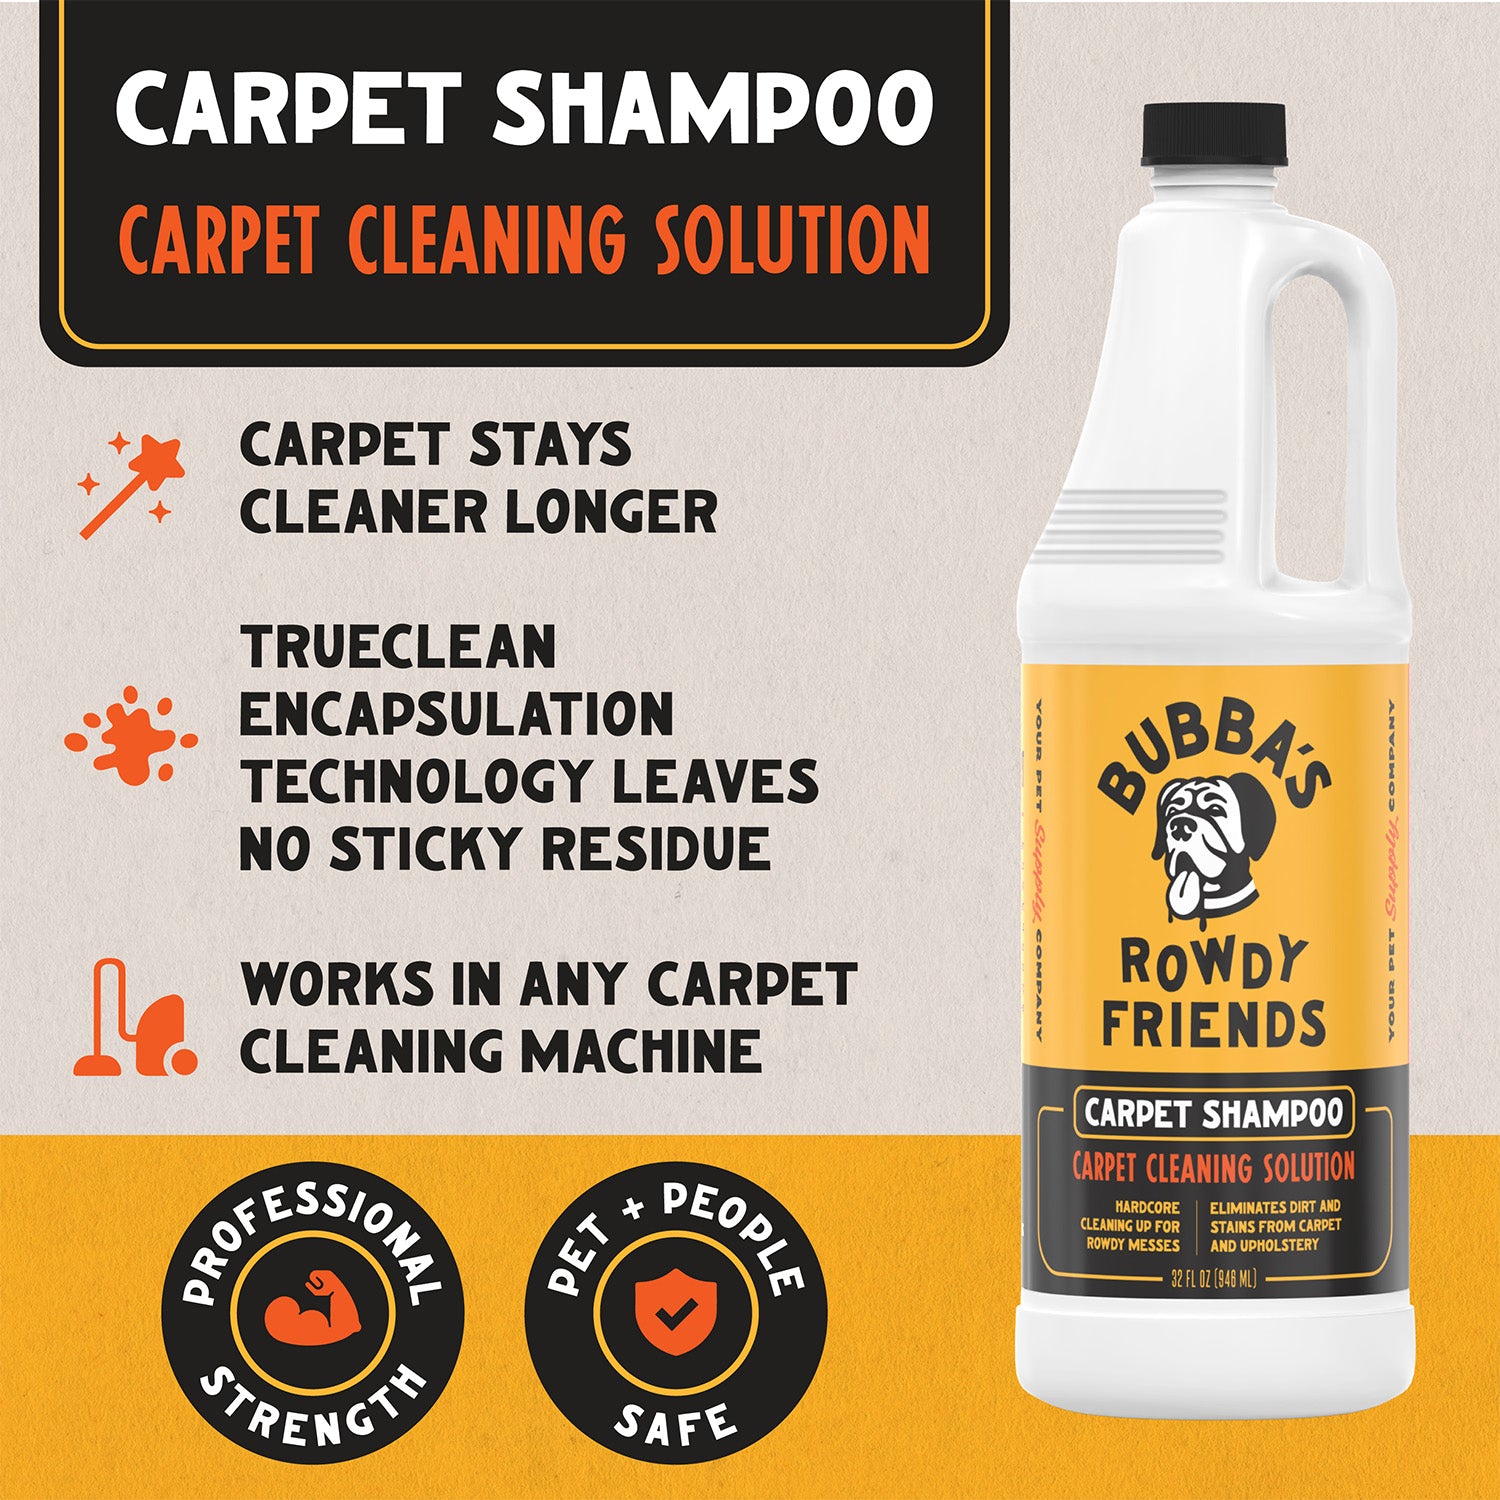 Carpet Shampoo – Bubba's Rowdy Friends Pet Supply Company